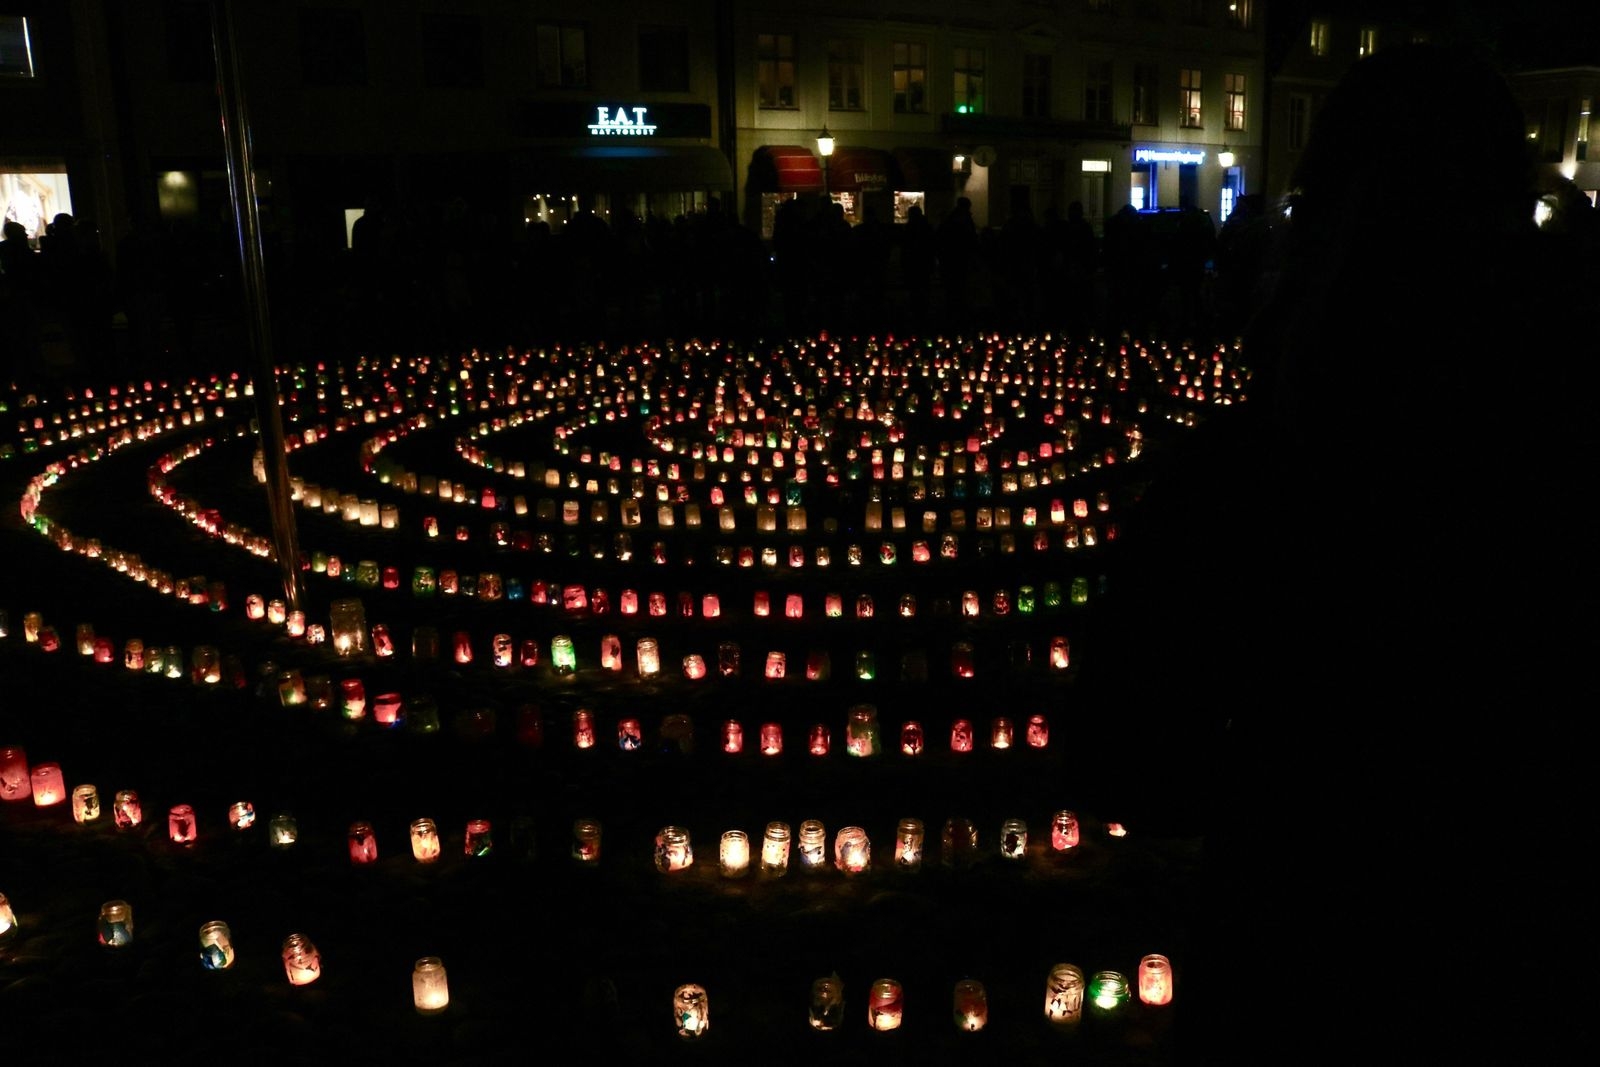 Ljusmanifestation på Stortorget.